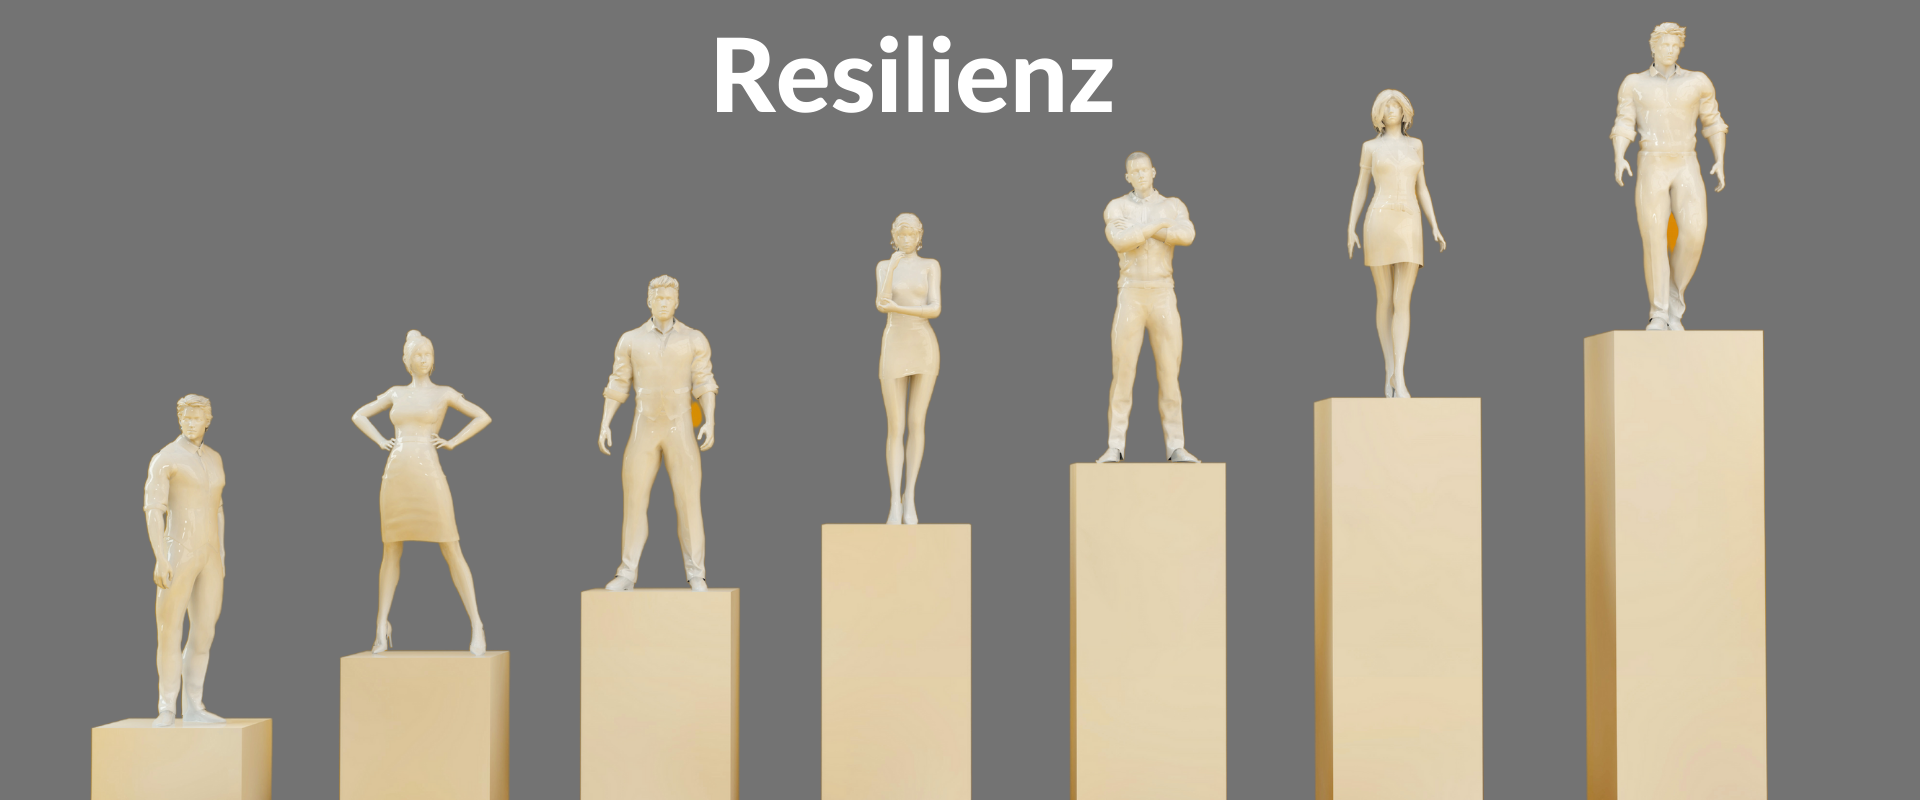 Die 7 Säulen der Resilienz - das Modell